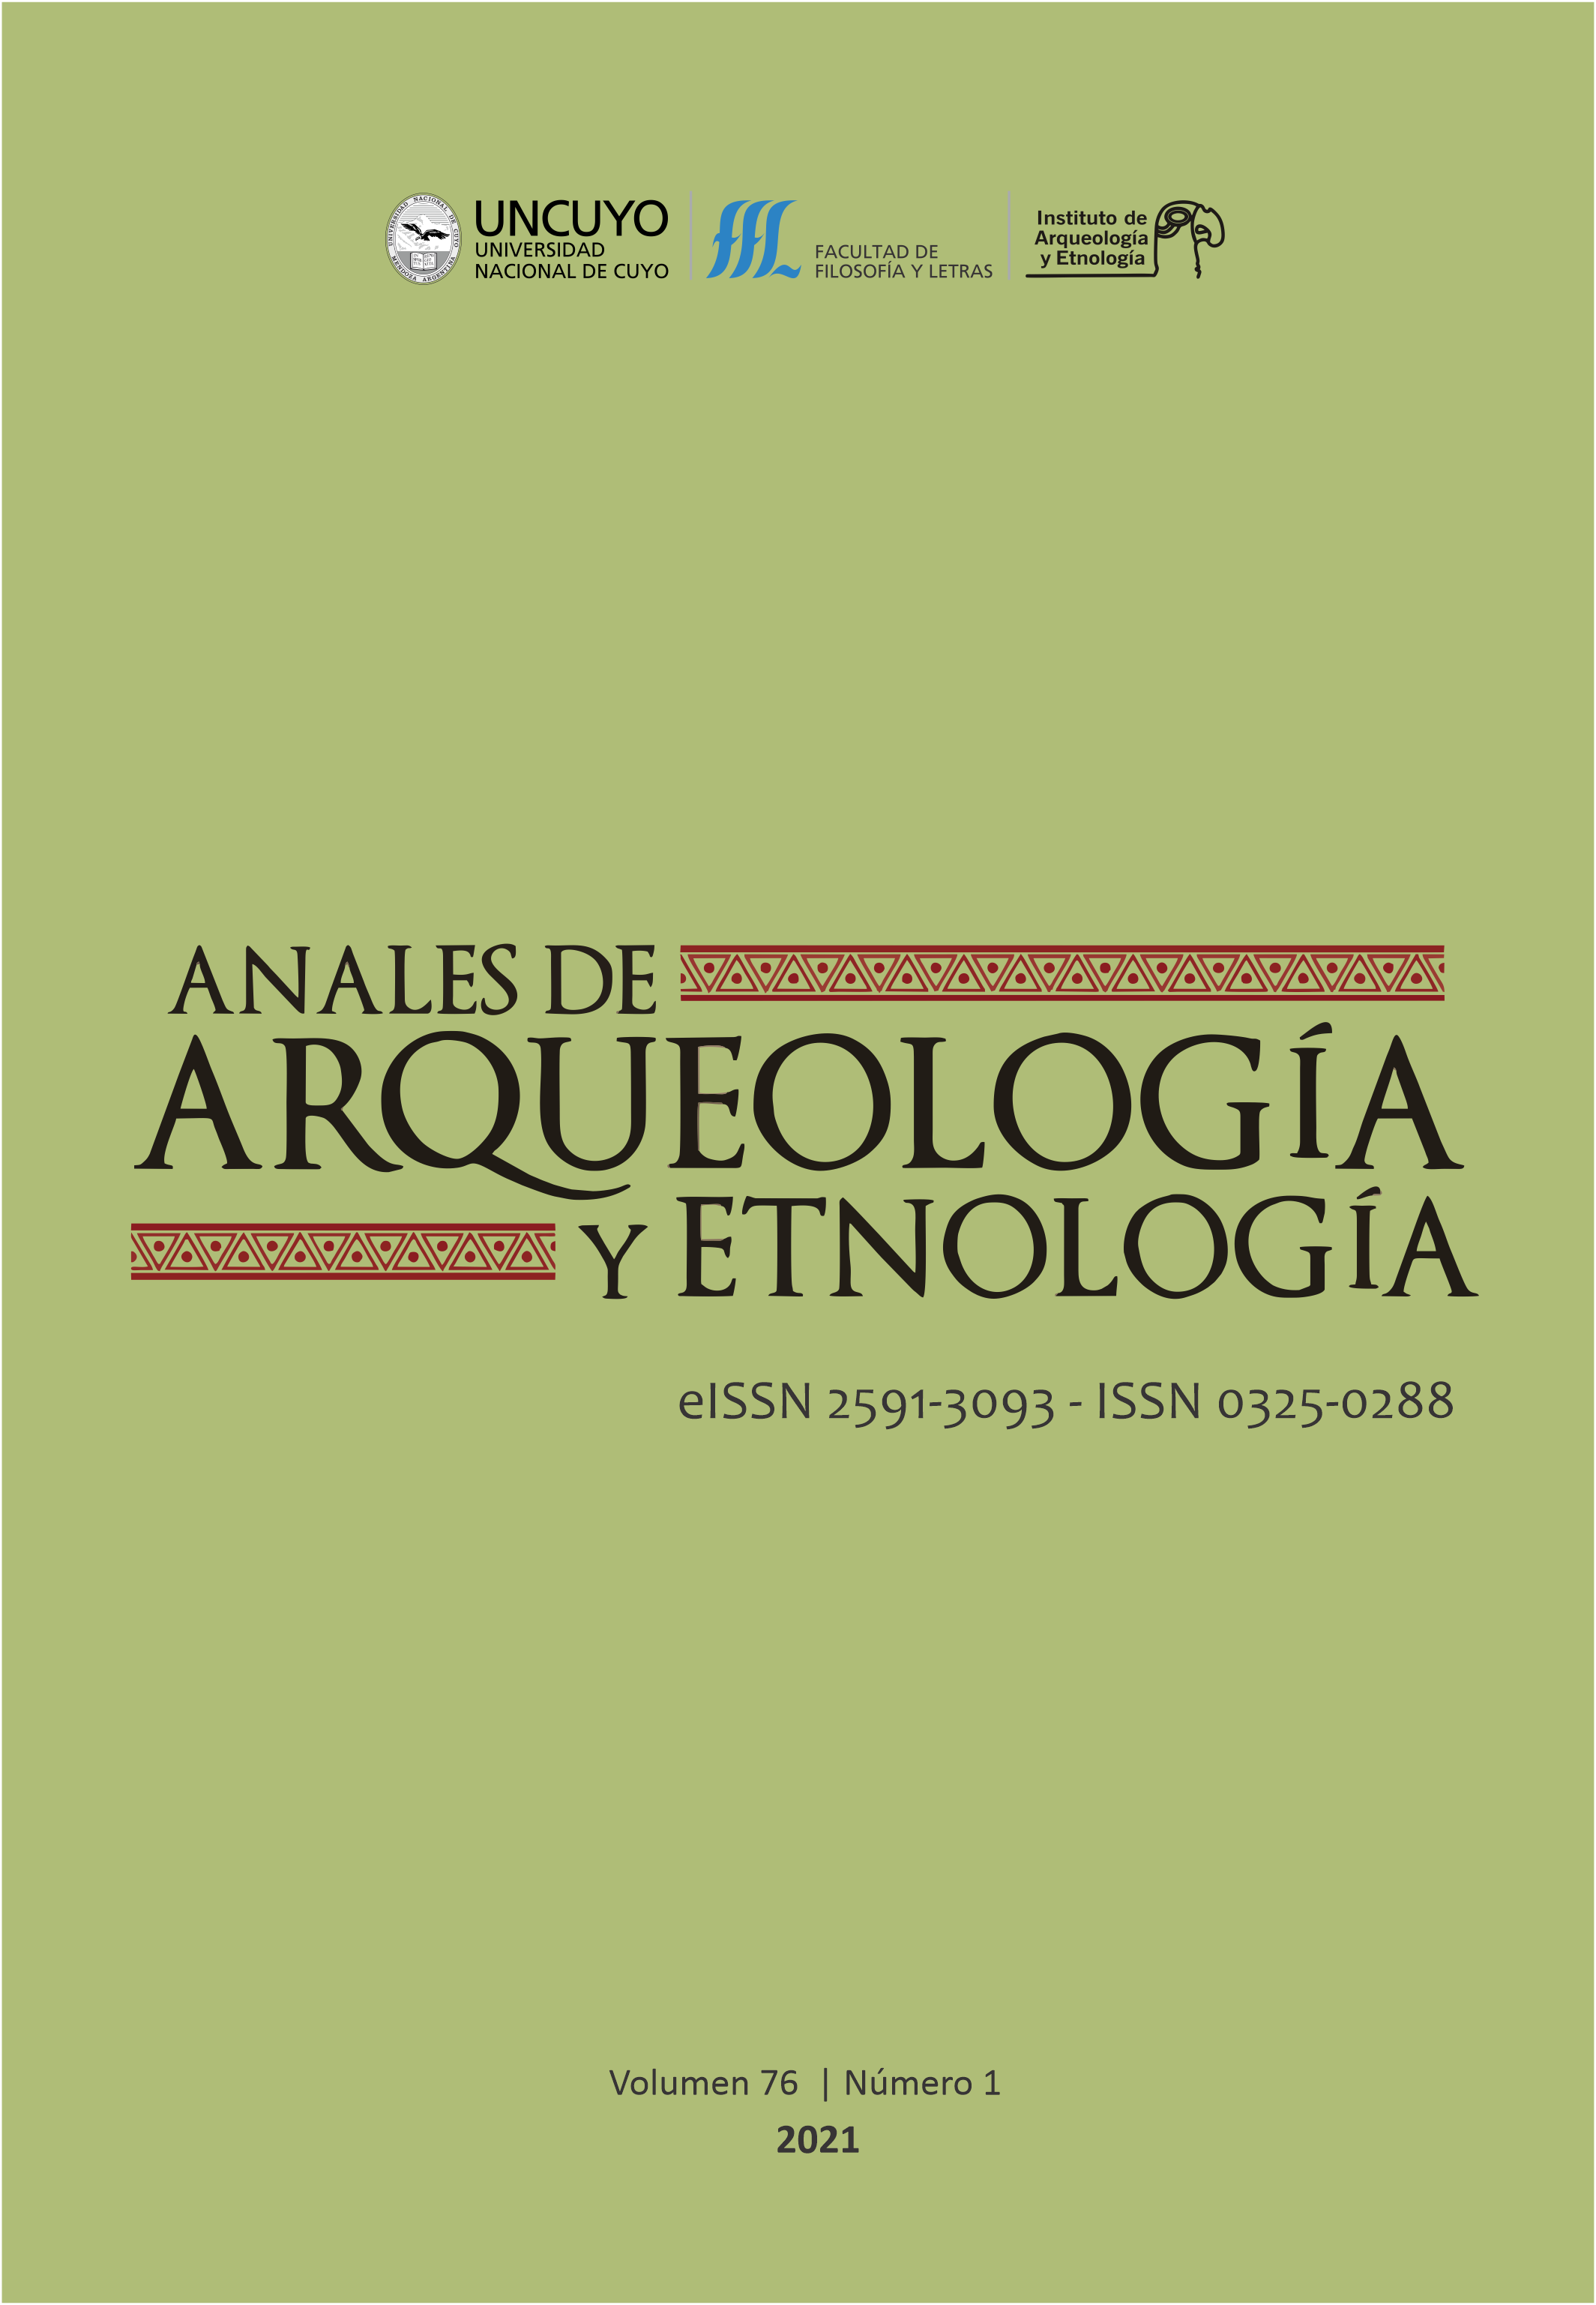 Anales de Arquelogía y Etnología 76